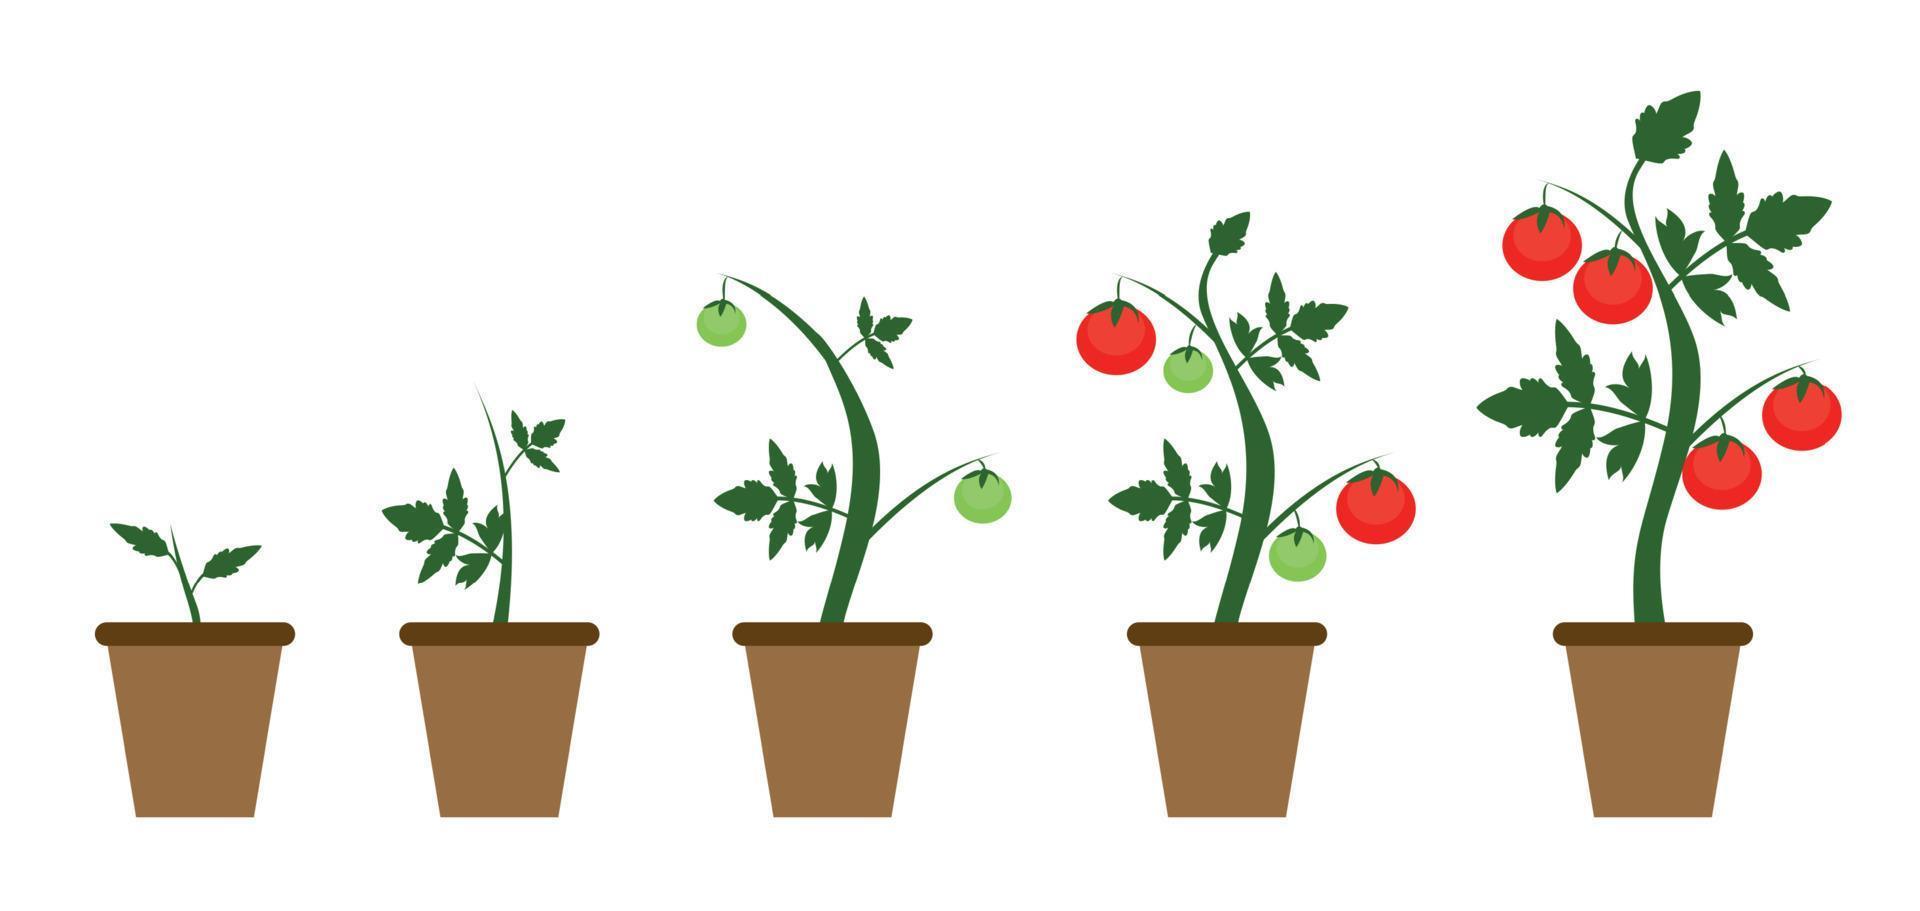 Ilustración de vector de fondo de jardín. arbusto creciente de planta de tomates en estilo plano moderno